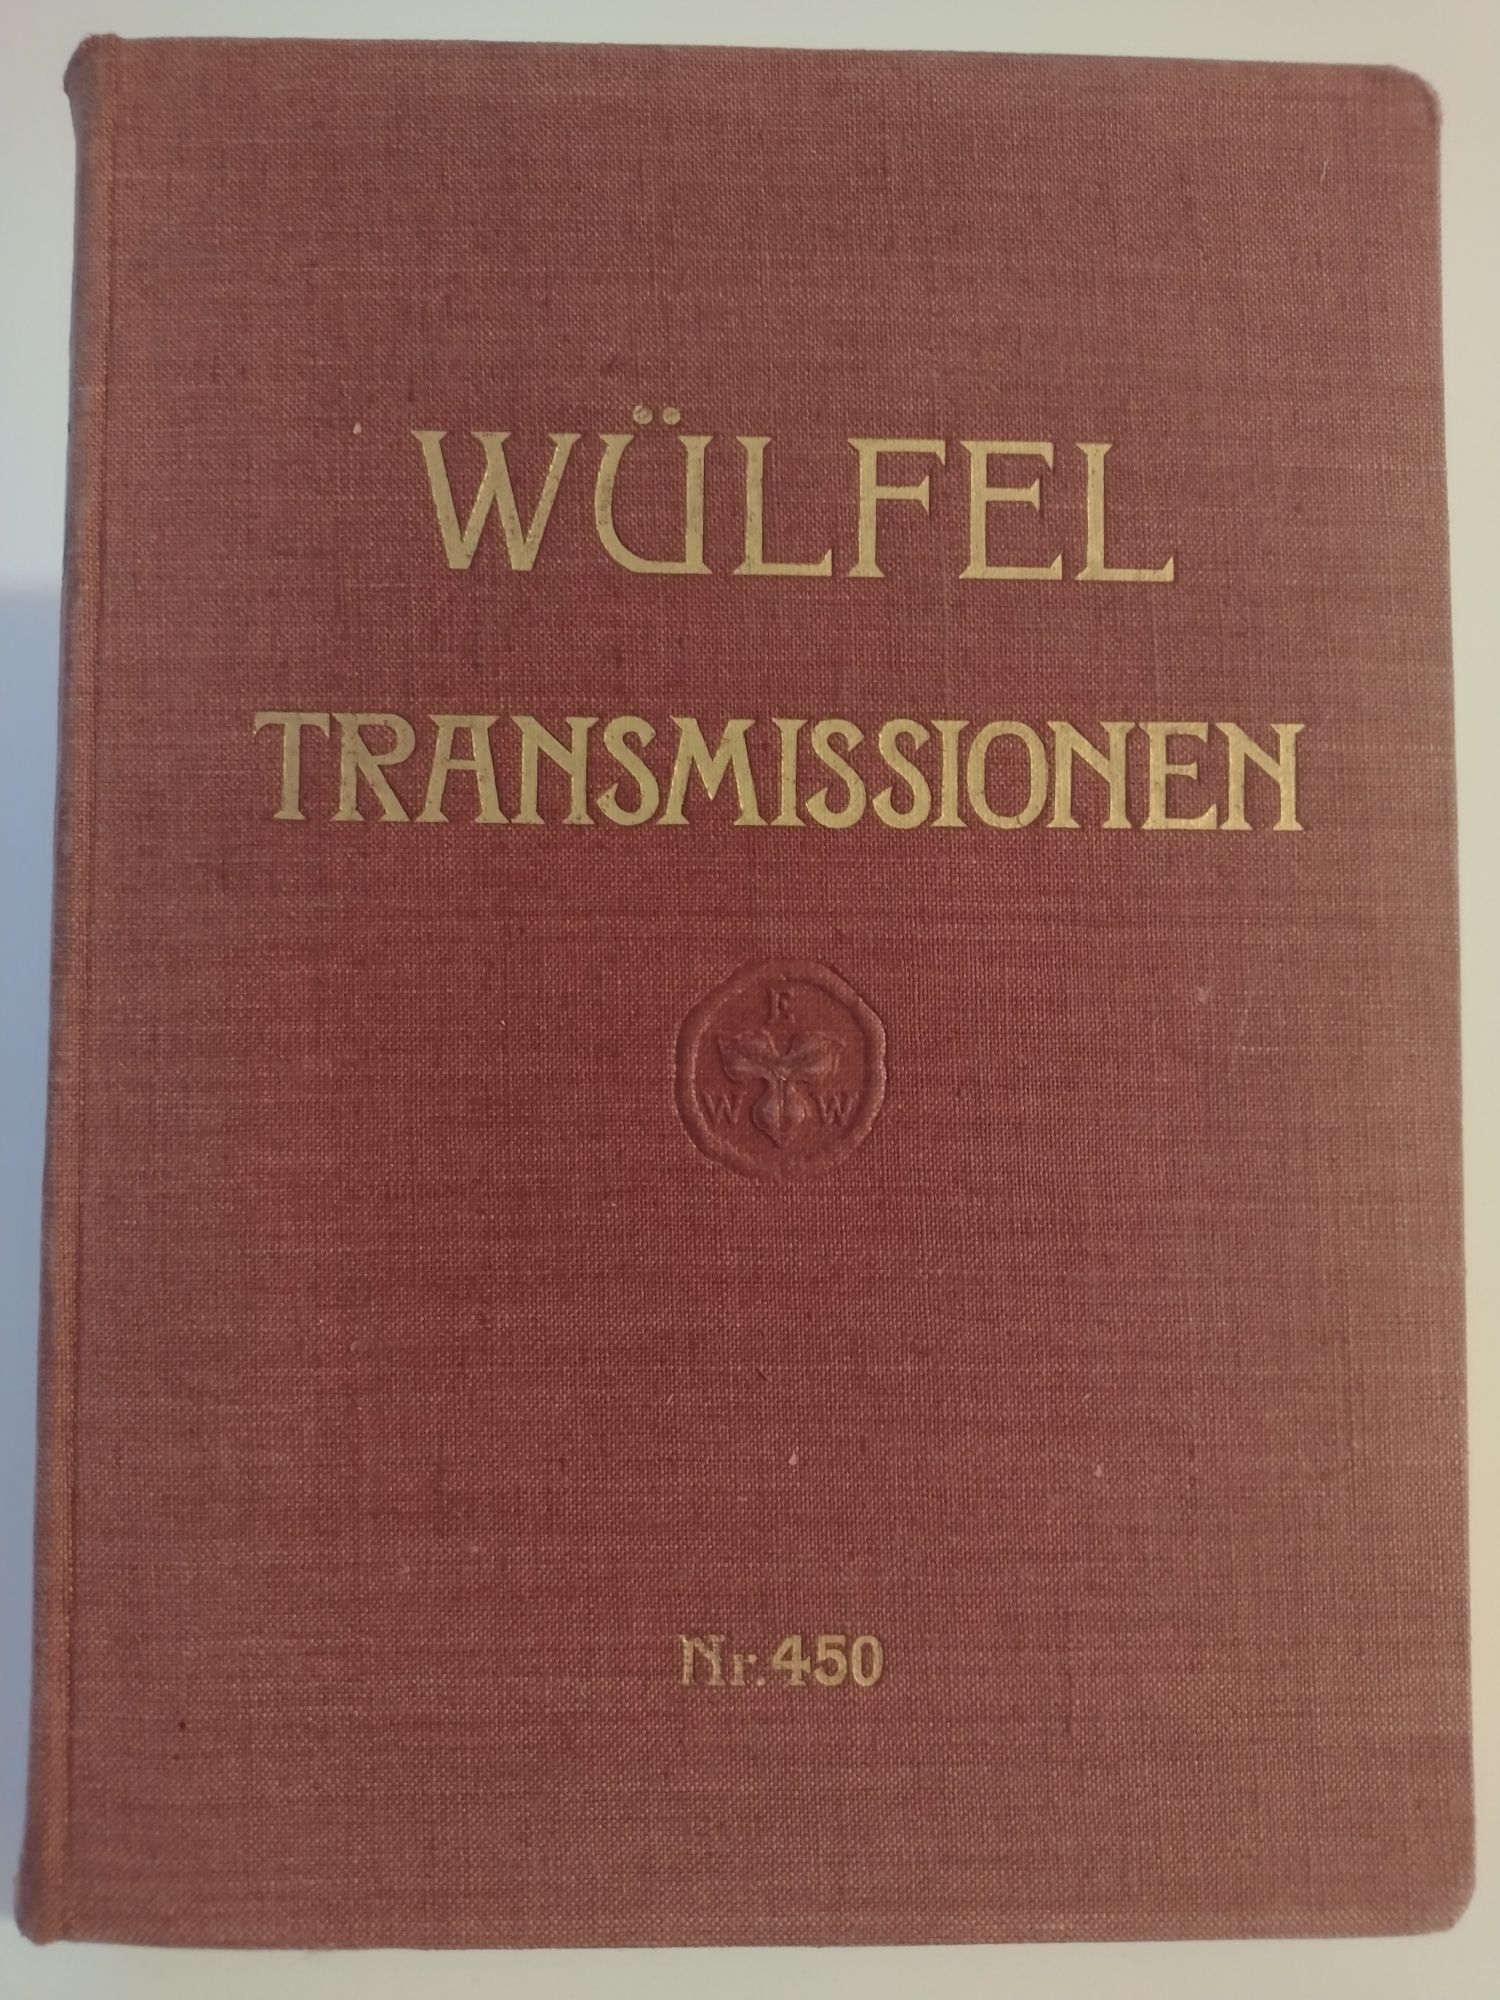 Niemiecki poradnik techniczny. Wulfel transmissionen. Nr 450